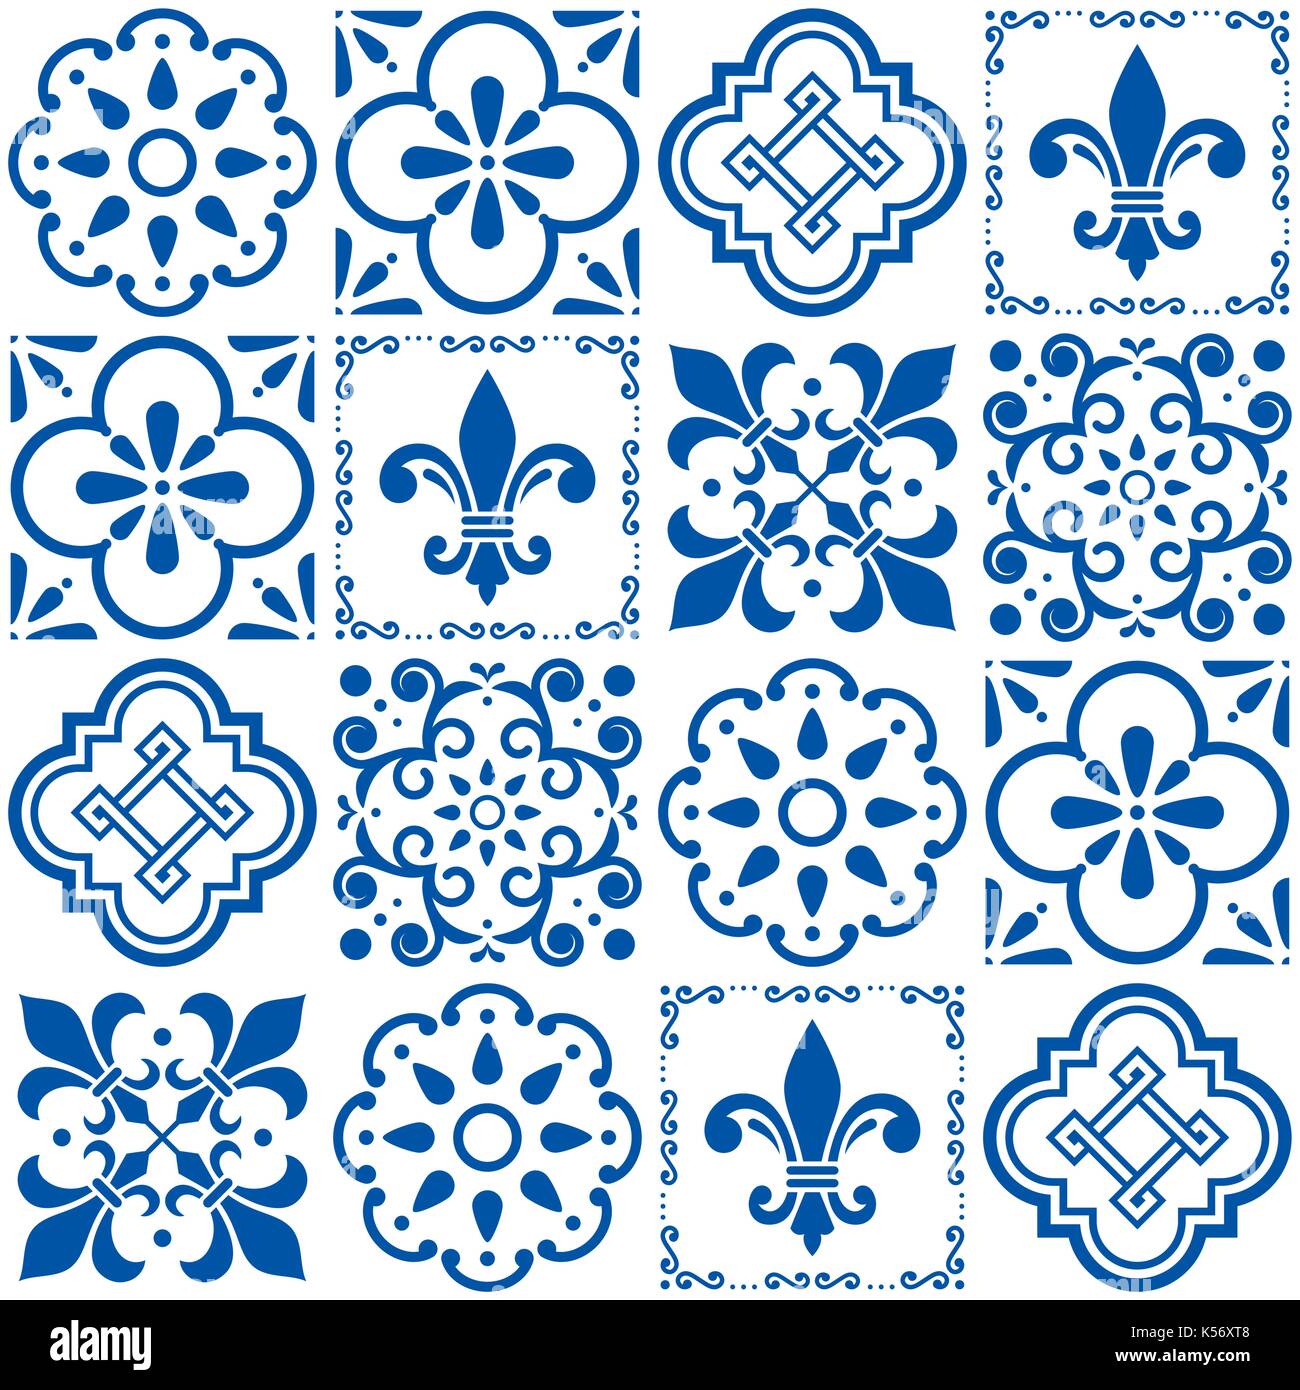 Le portugais), motif carreaux bleu indigo transparent de Lisbonne, design vintage azulejos céramique géométrique et floral texture formes abstraites Illustration de Vecteur